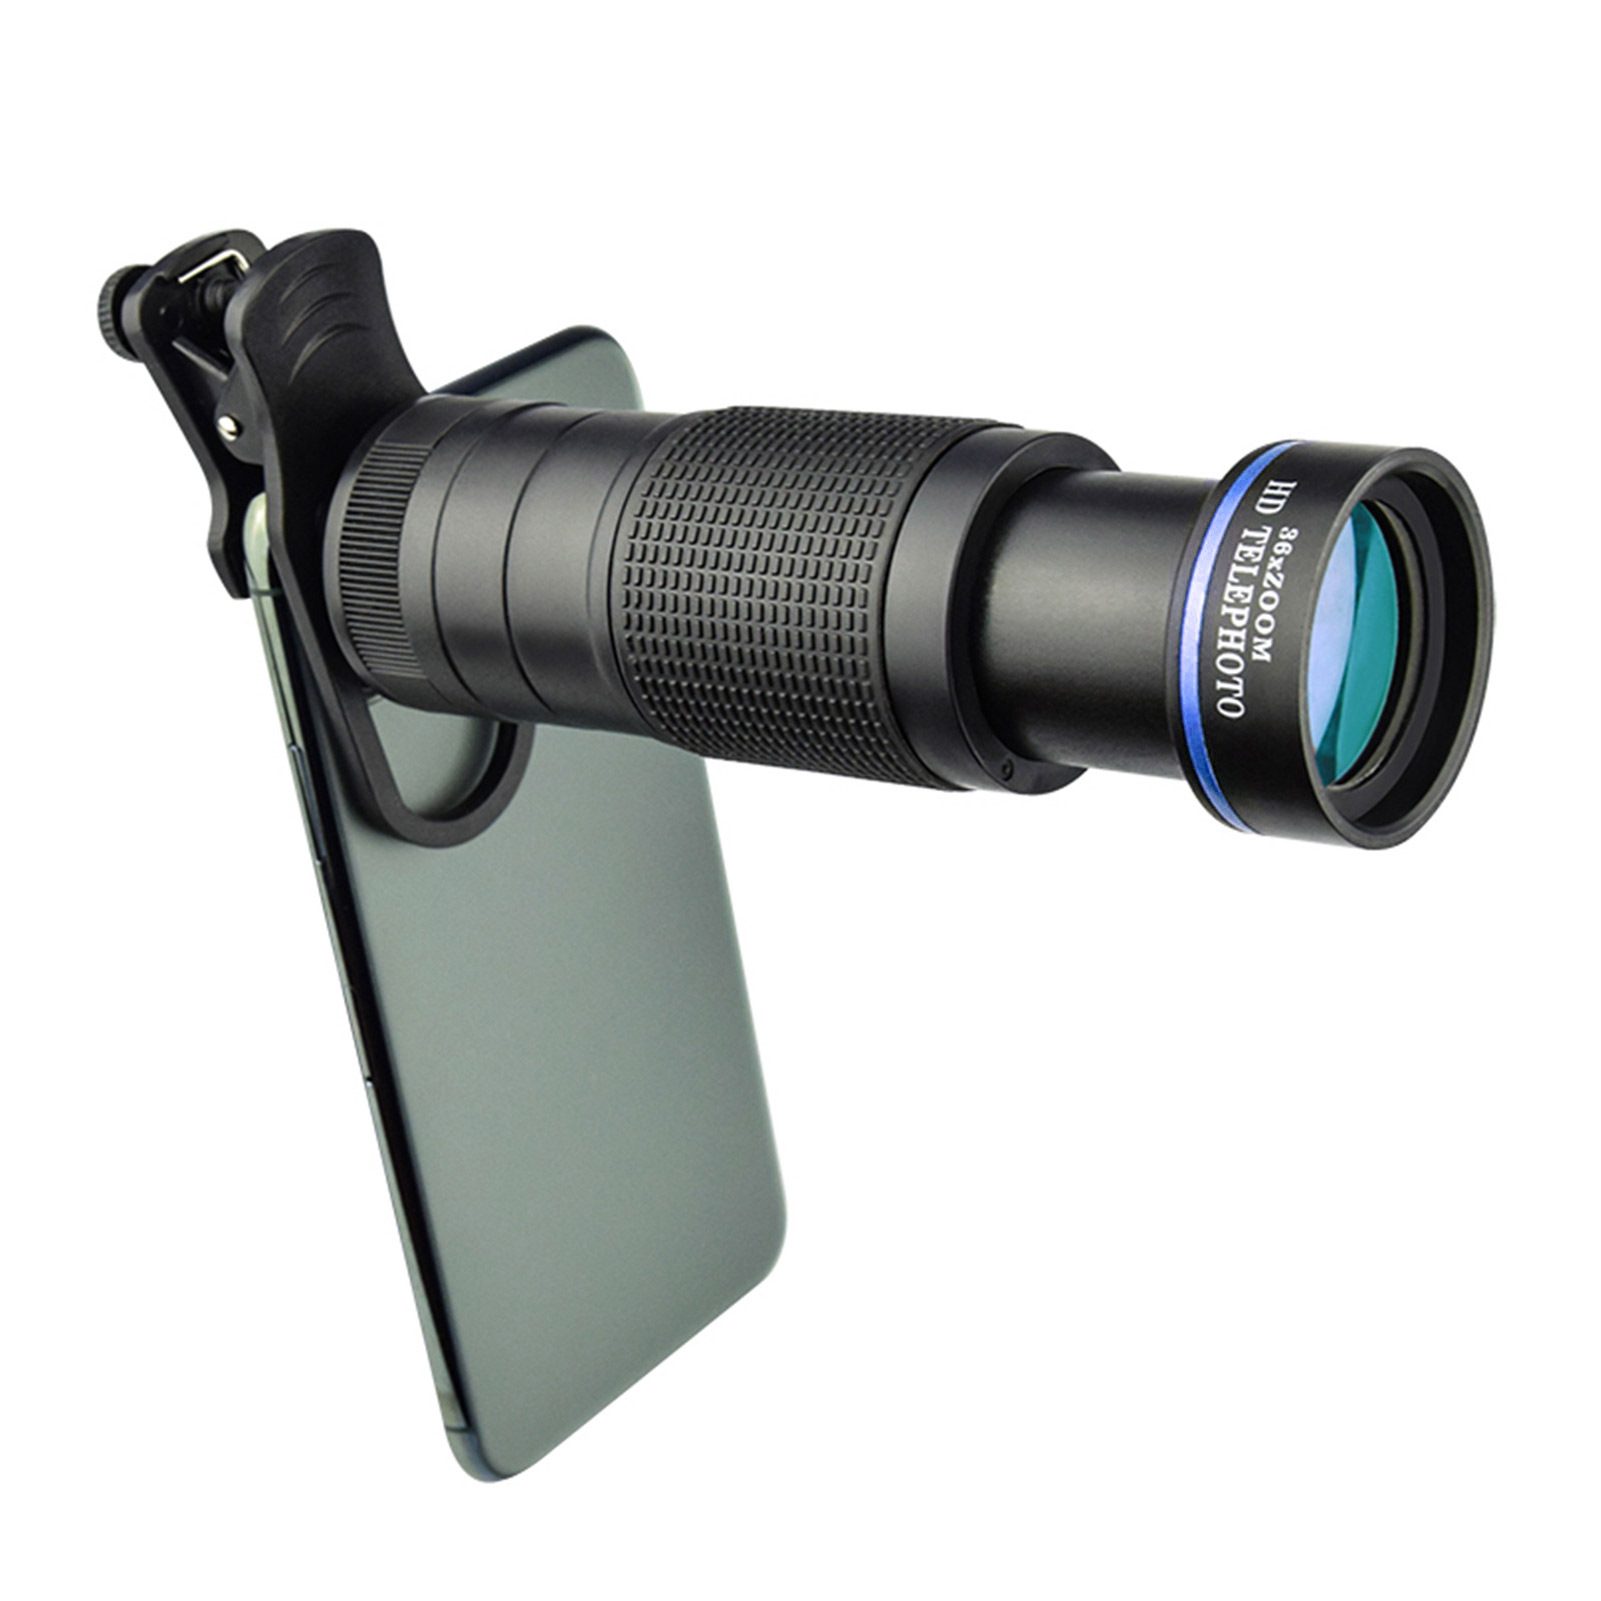 INF 36X Handy Fernglas für mm, 36x, 7,7 HD-Teleobjektiv